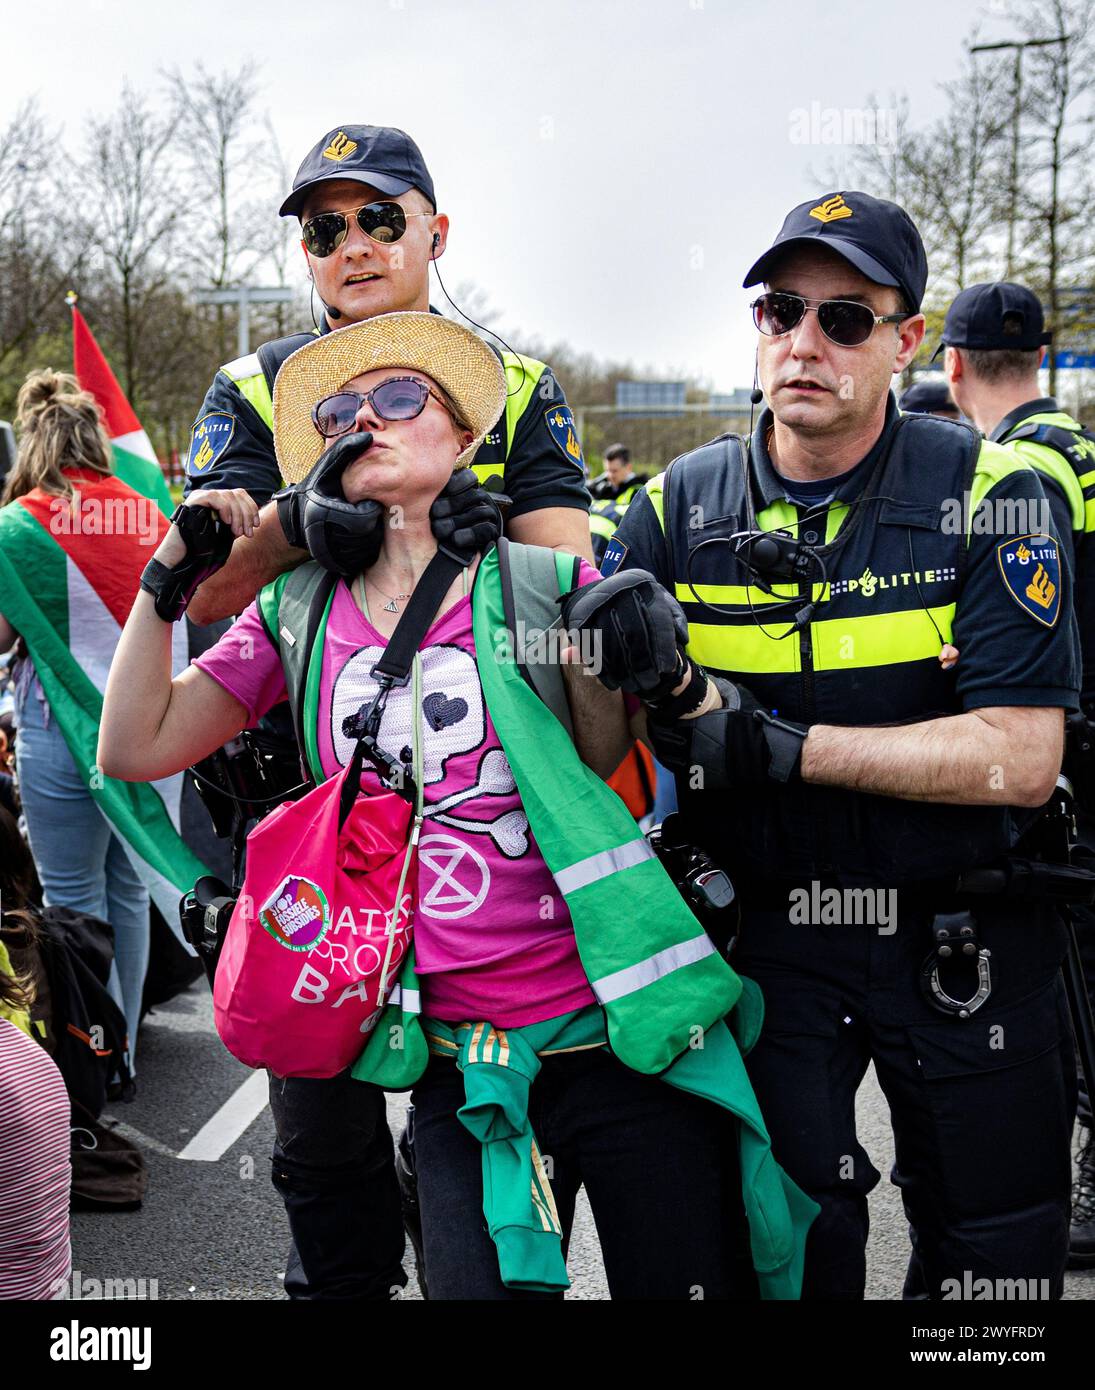 DEN HAAG - die Schwedin Greta Thunberg nimmt an einer Blockade der A12 Teil. Thunberg war bei der 37. Straßenblockade anwesend, als während der Aktion neue internationale Aktionen gegen fossile Subventionen angekündigt wurden. ANP RAMON VAN FLYMEN Credit: ANP/Alamy Live News Stockfoto